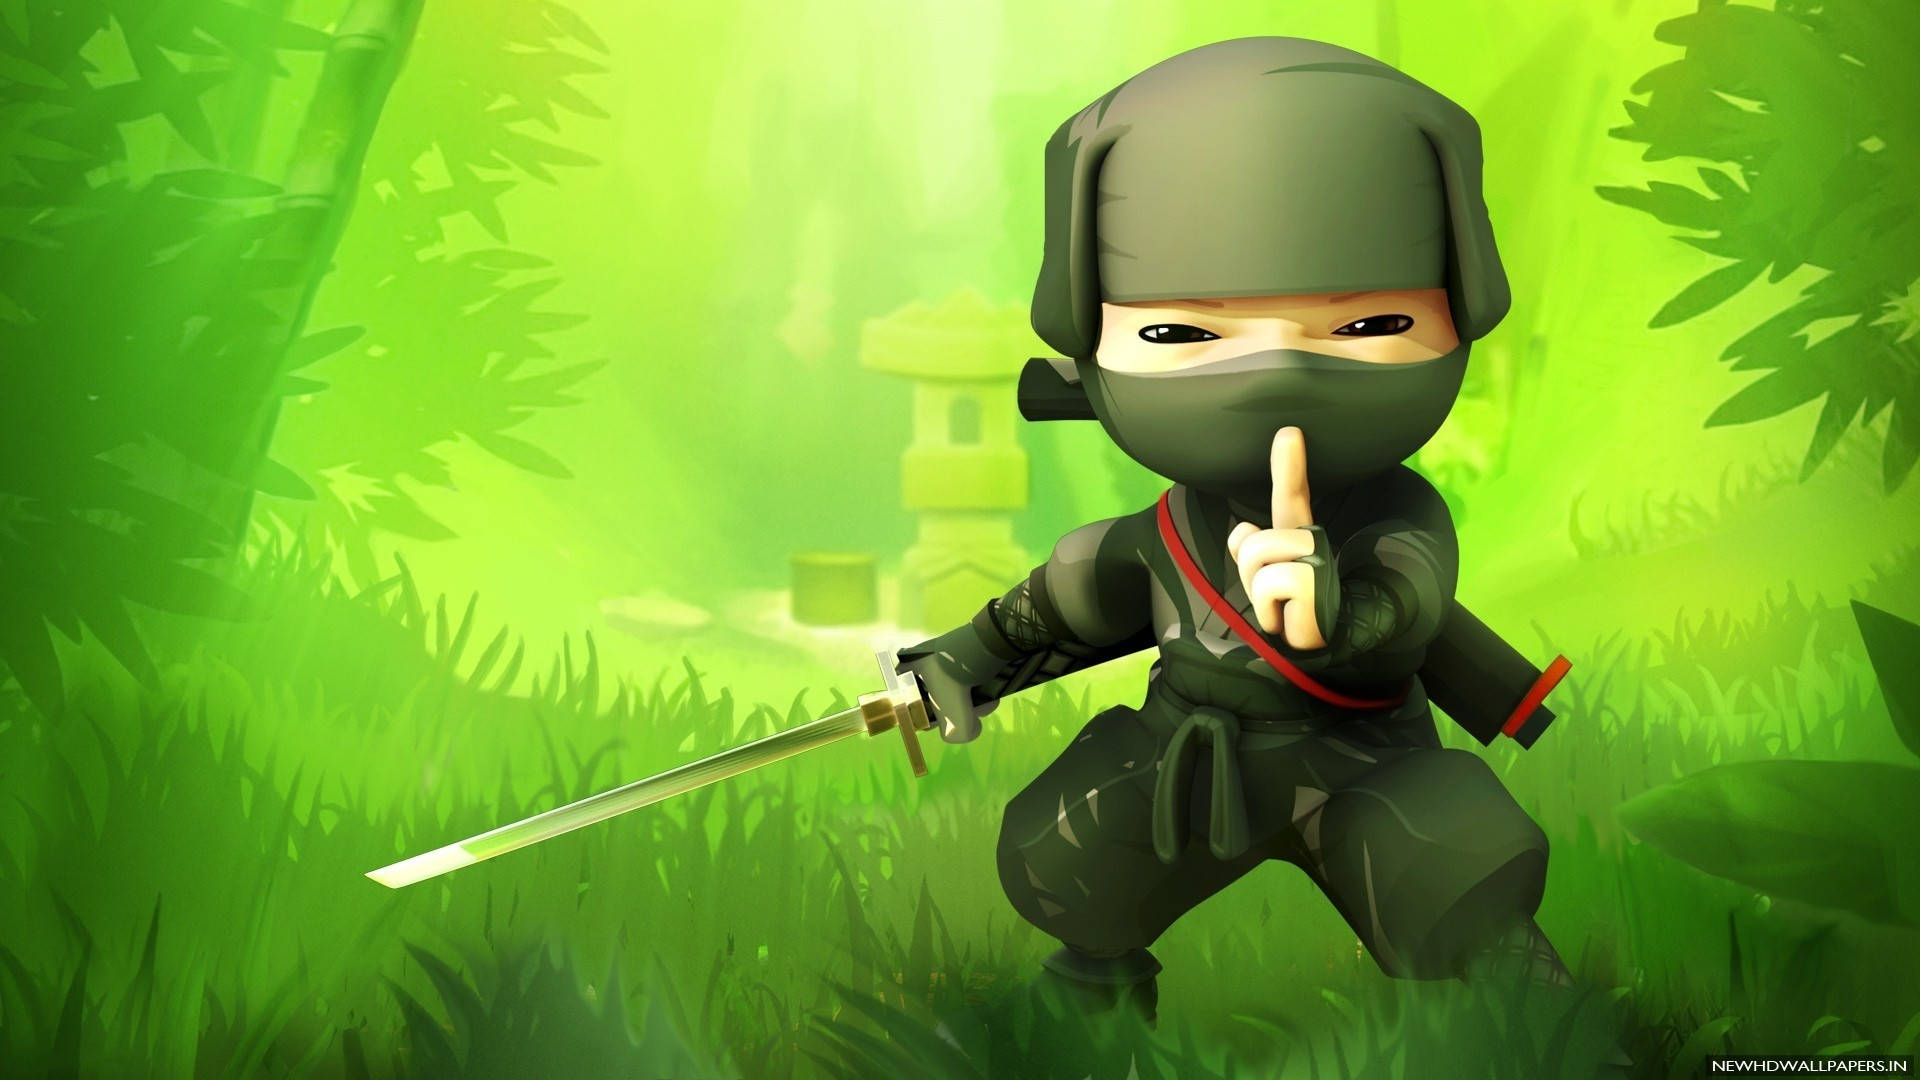 Ninja 4k Cartoon Wallpaper